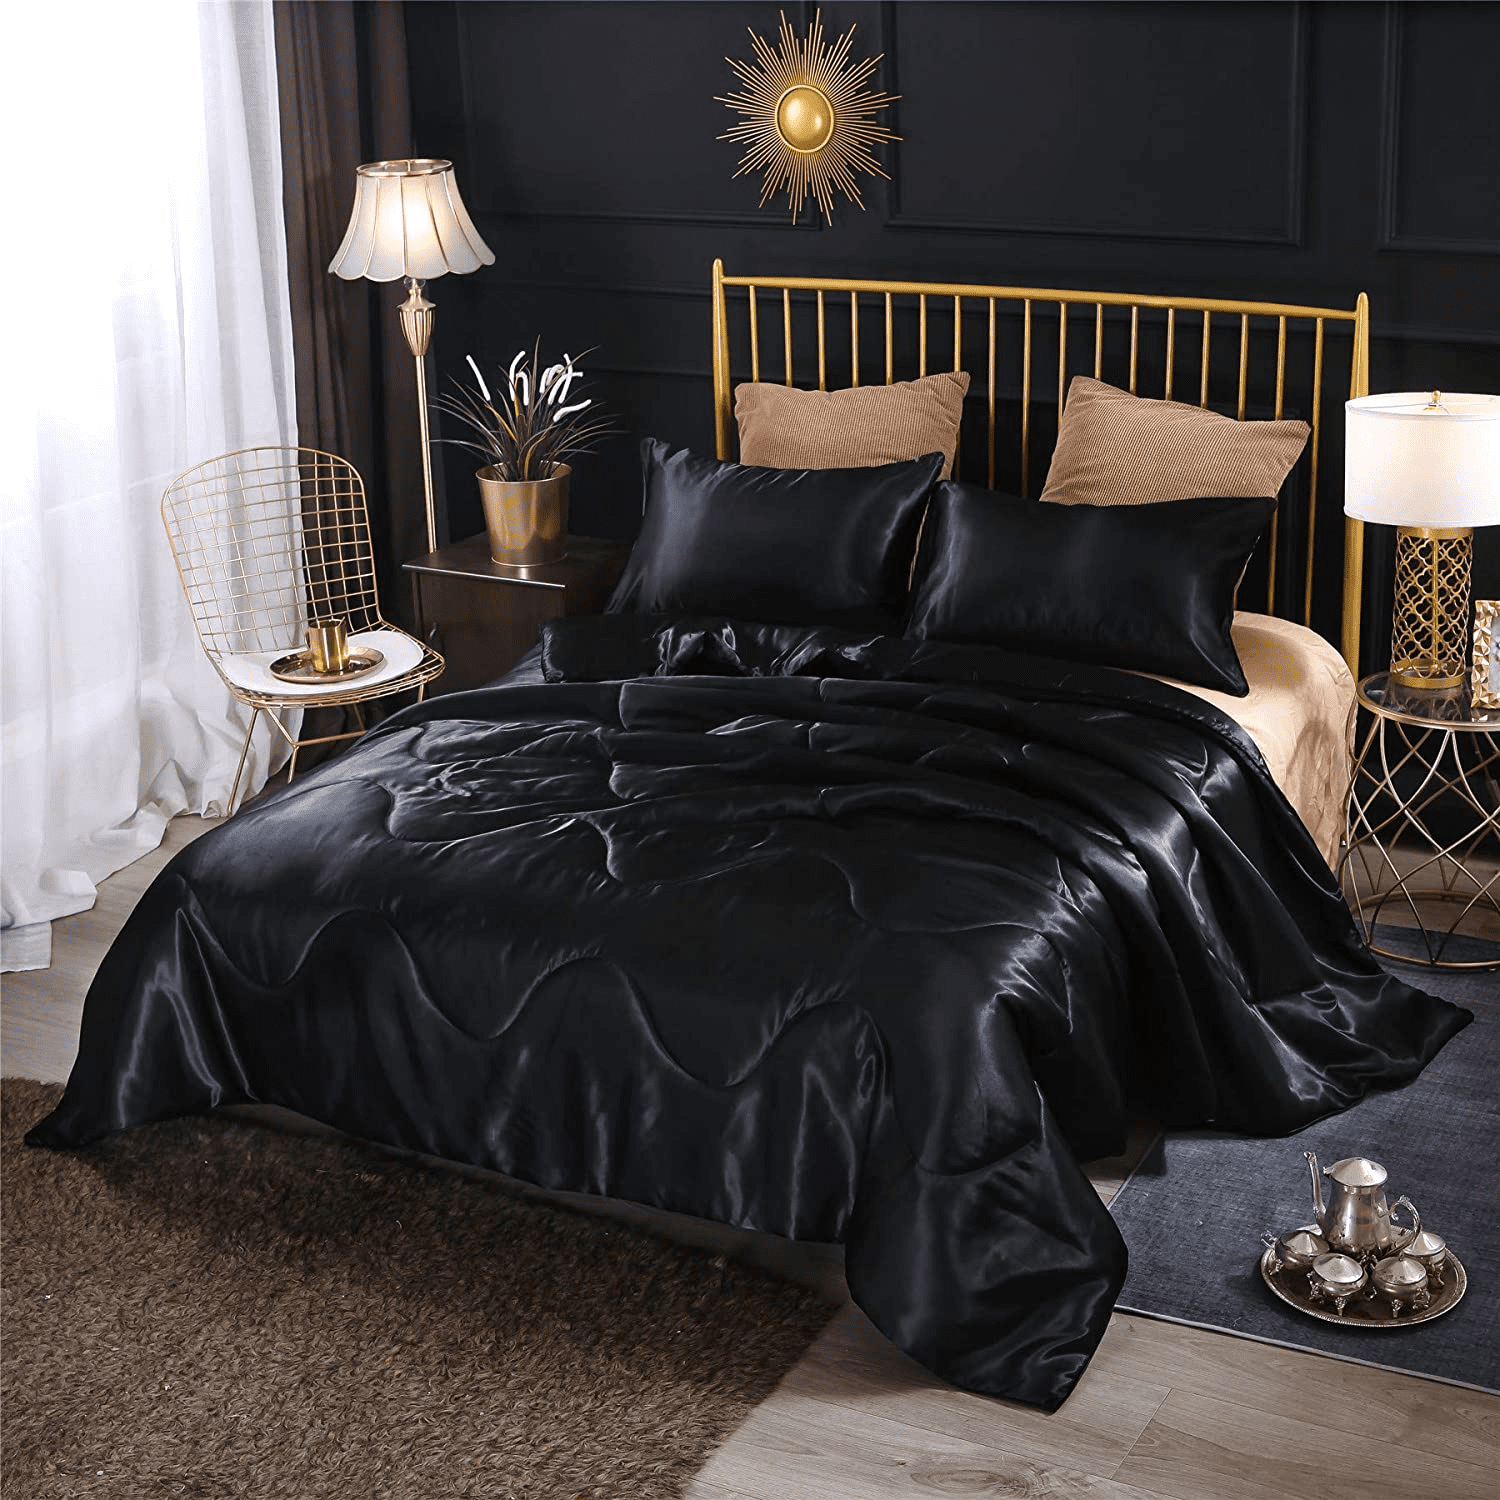 Btargot Satin Silky Soft Sexy Luxury Queen Comforter Set Solid Luxury  Lightweight Bedding Set Black